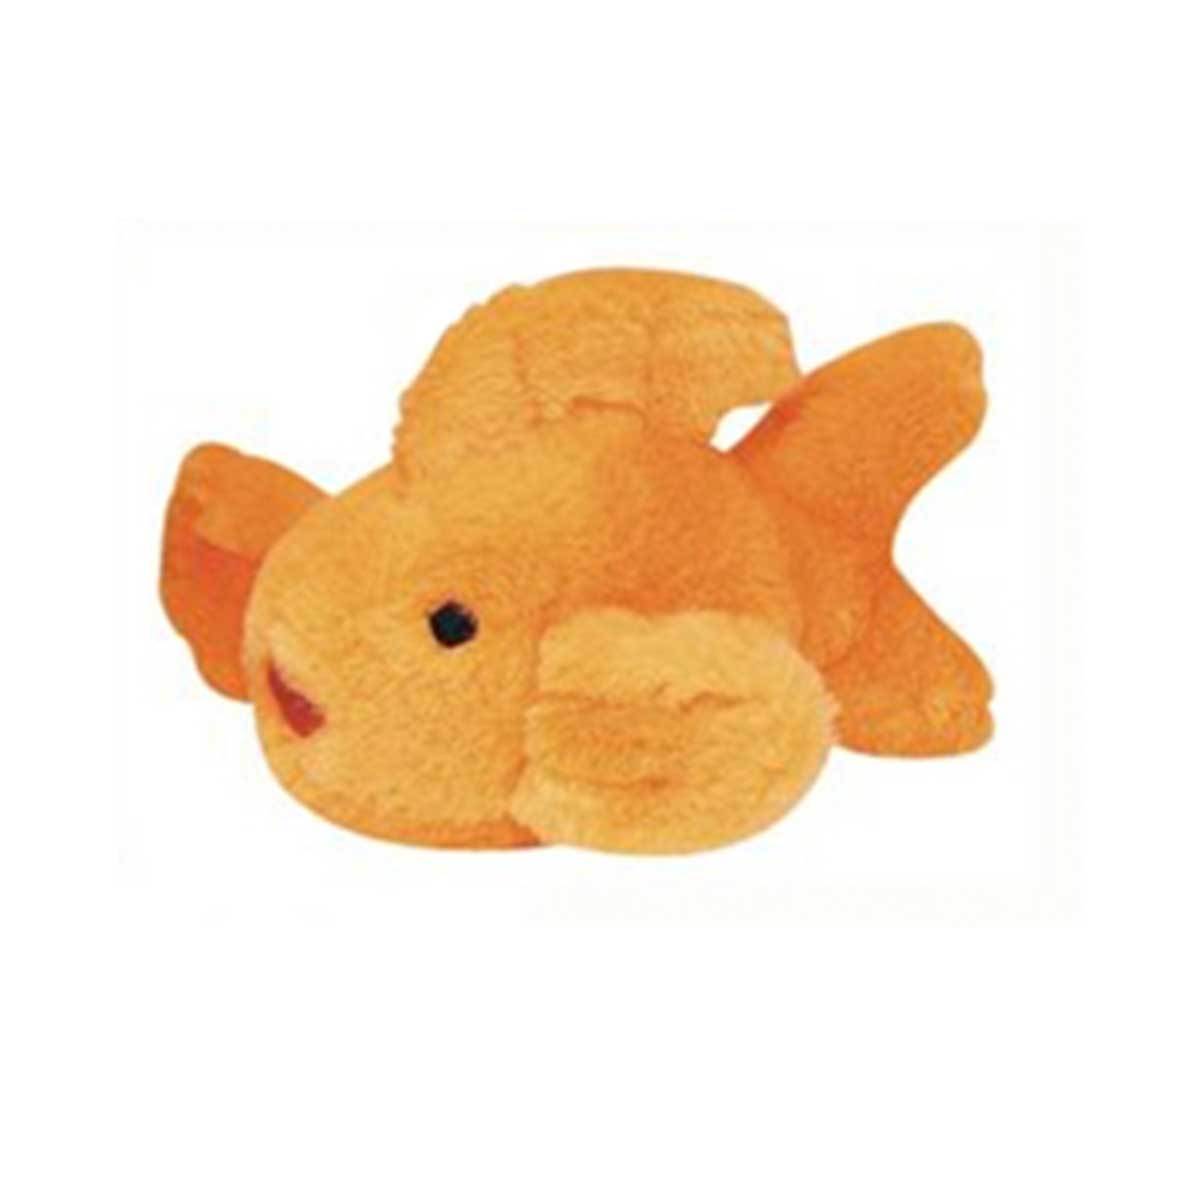 Goldfish Look Who's Talking Plush Dog Toy | Pawlicious & Company